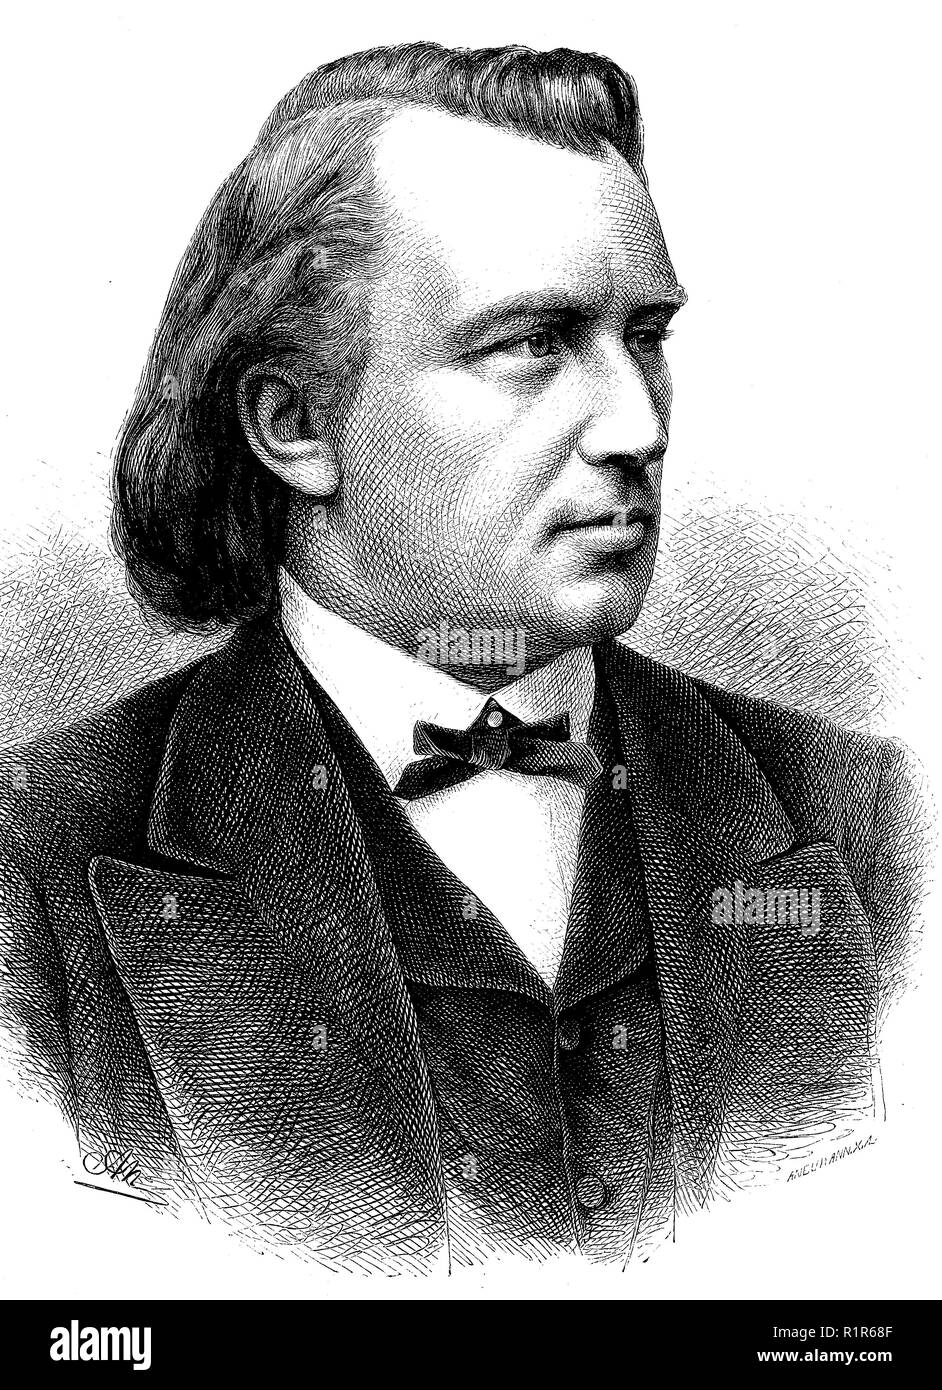 Digital verbesserte Reproduktion, Johannes Brahms, 1833-1897, deutscher Komponist und Pianist der Romantik, original Drucken aus dem Jahr 1880 Stockfoto